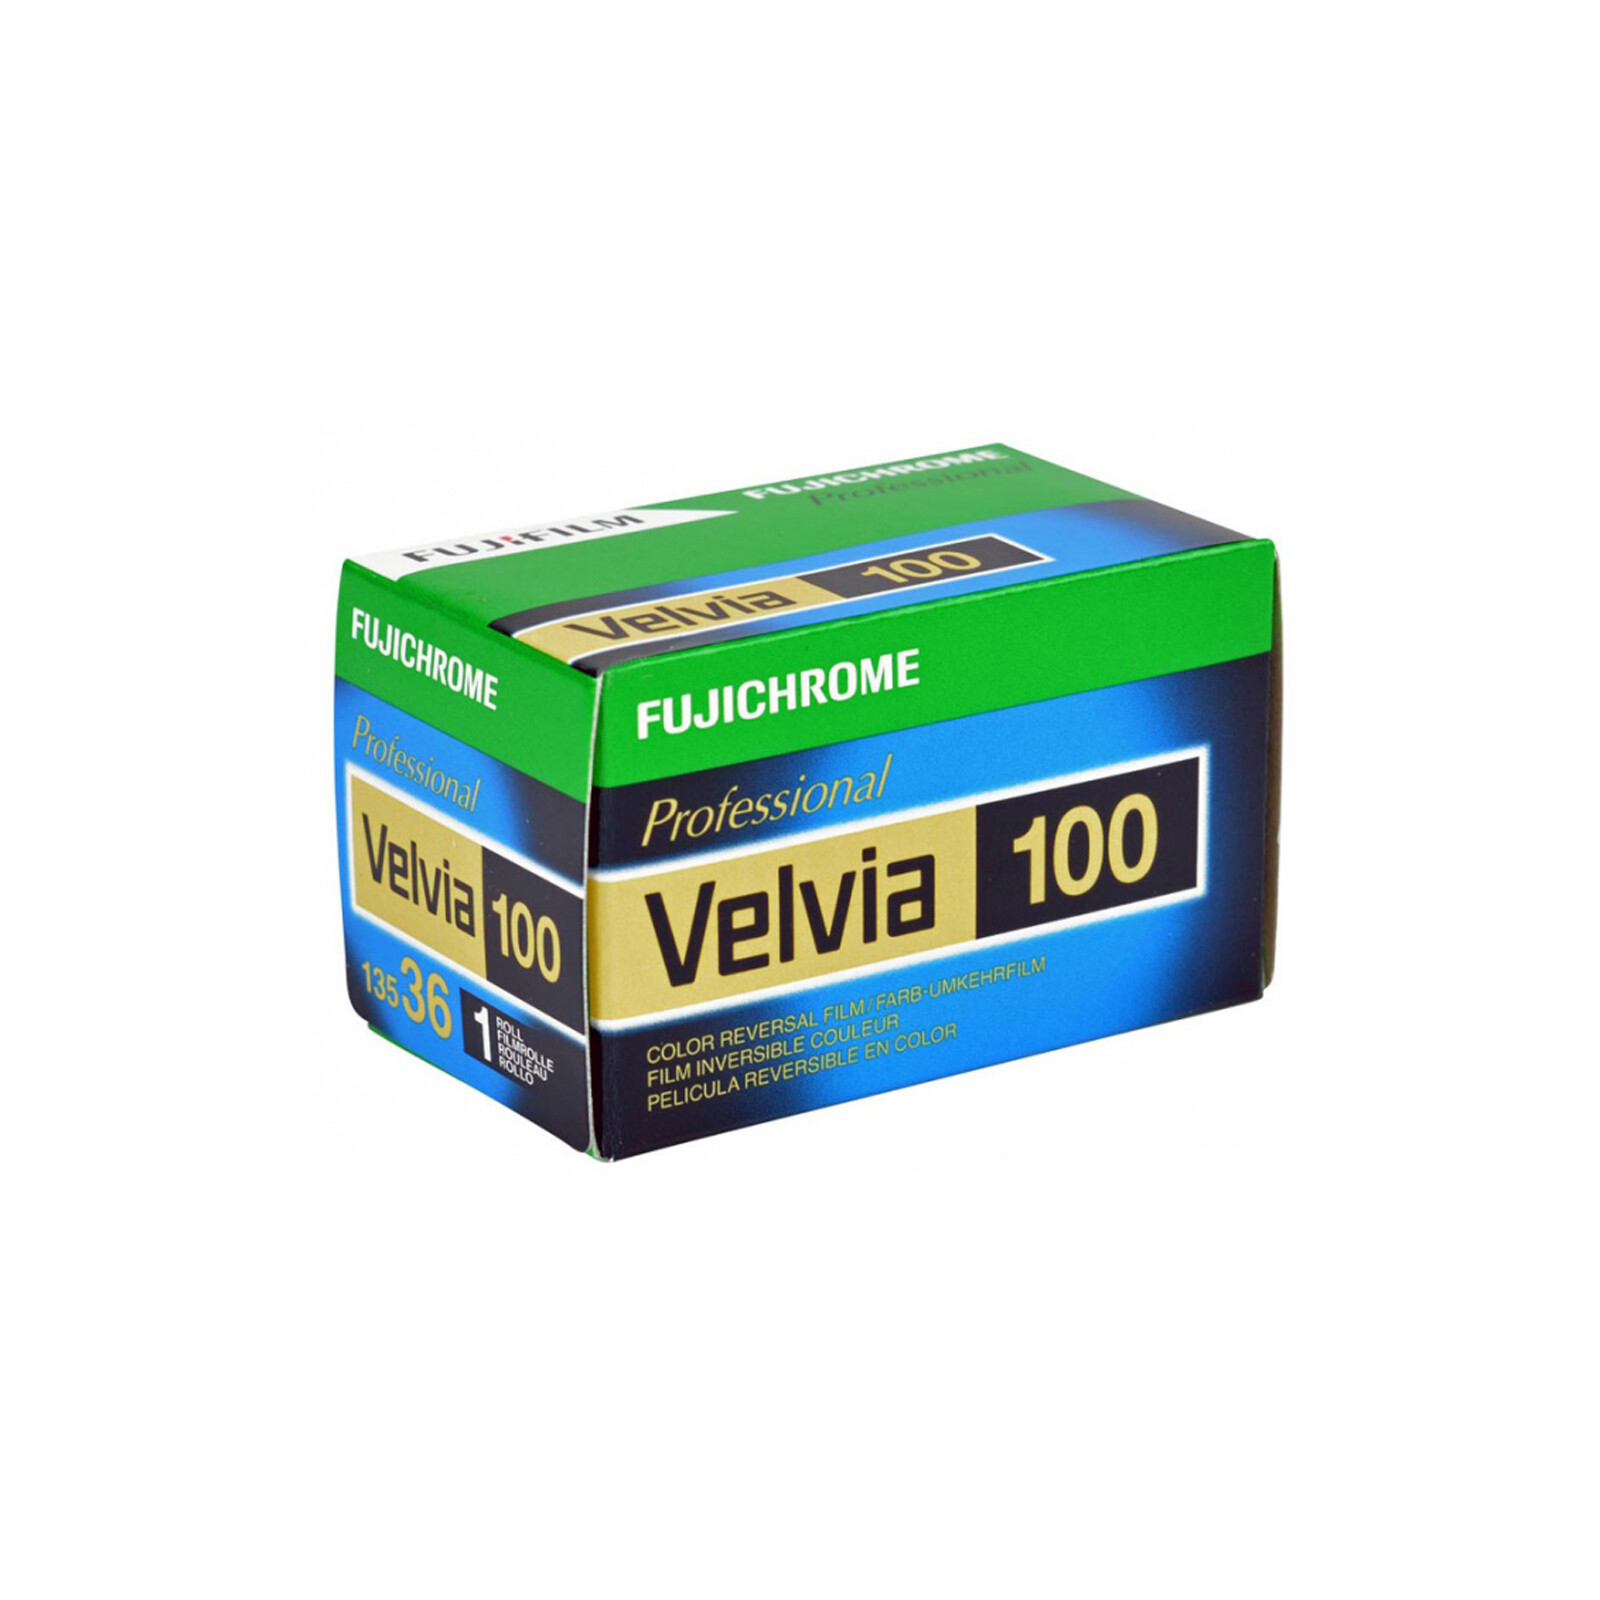 Fujichrome Velvia 100 135-36